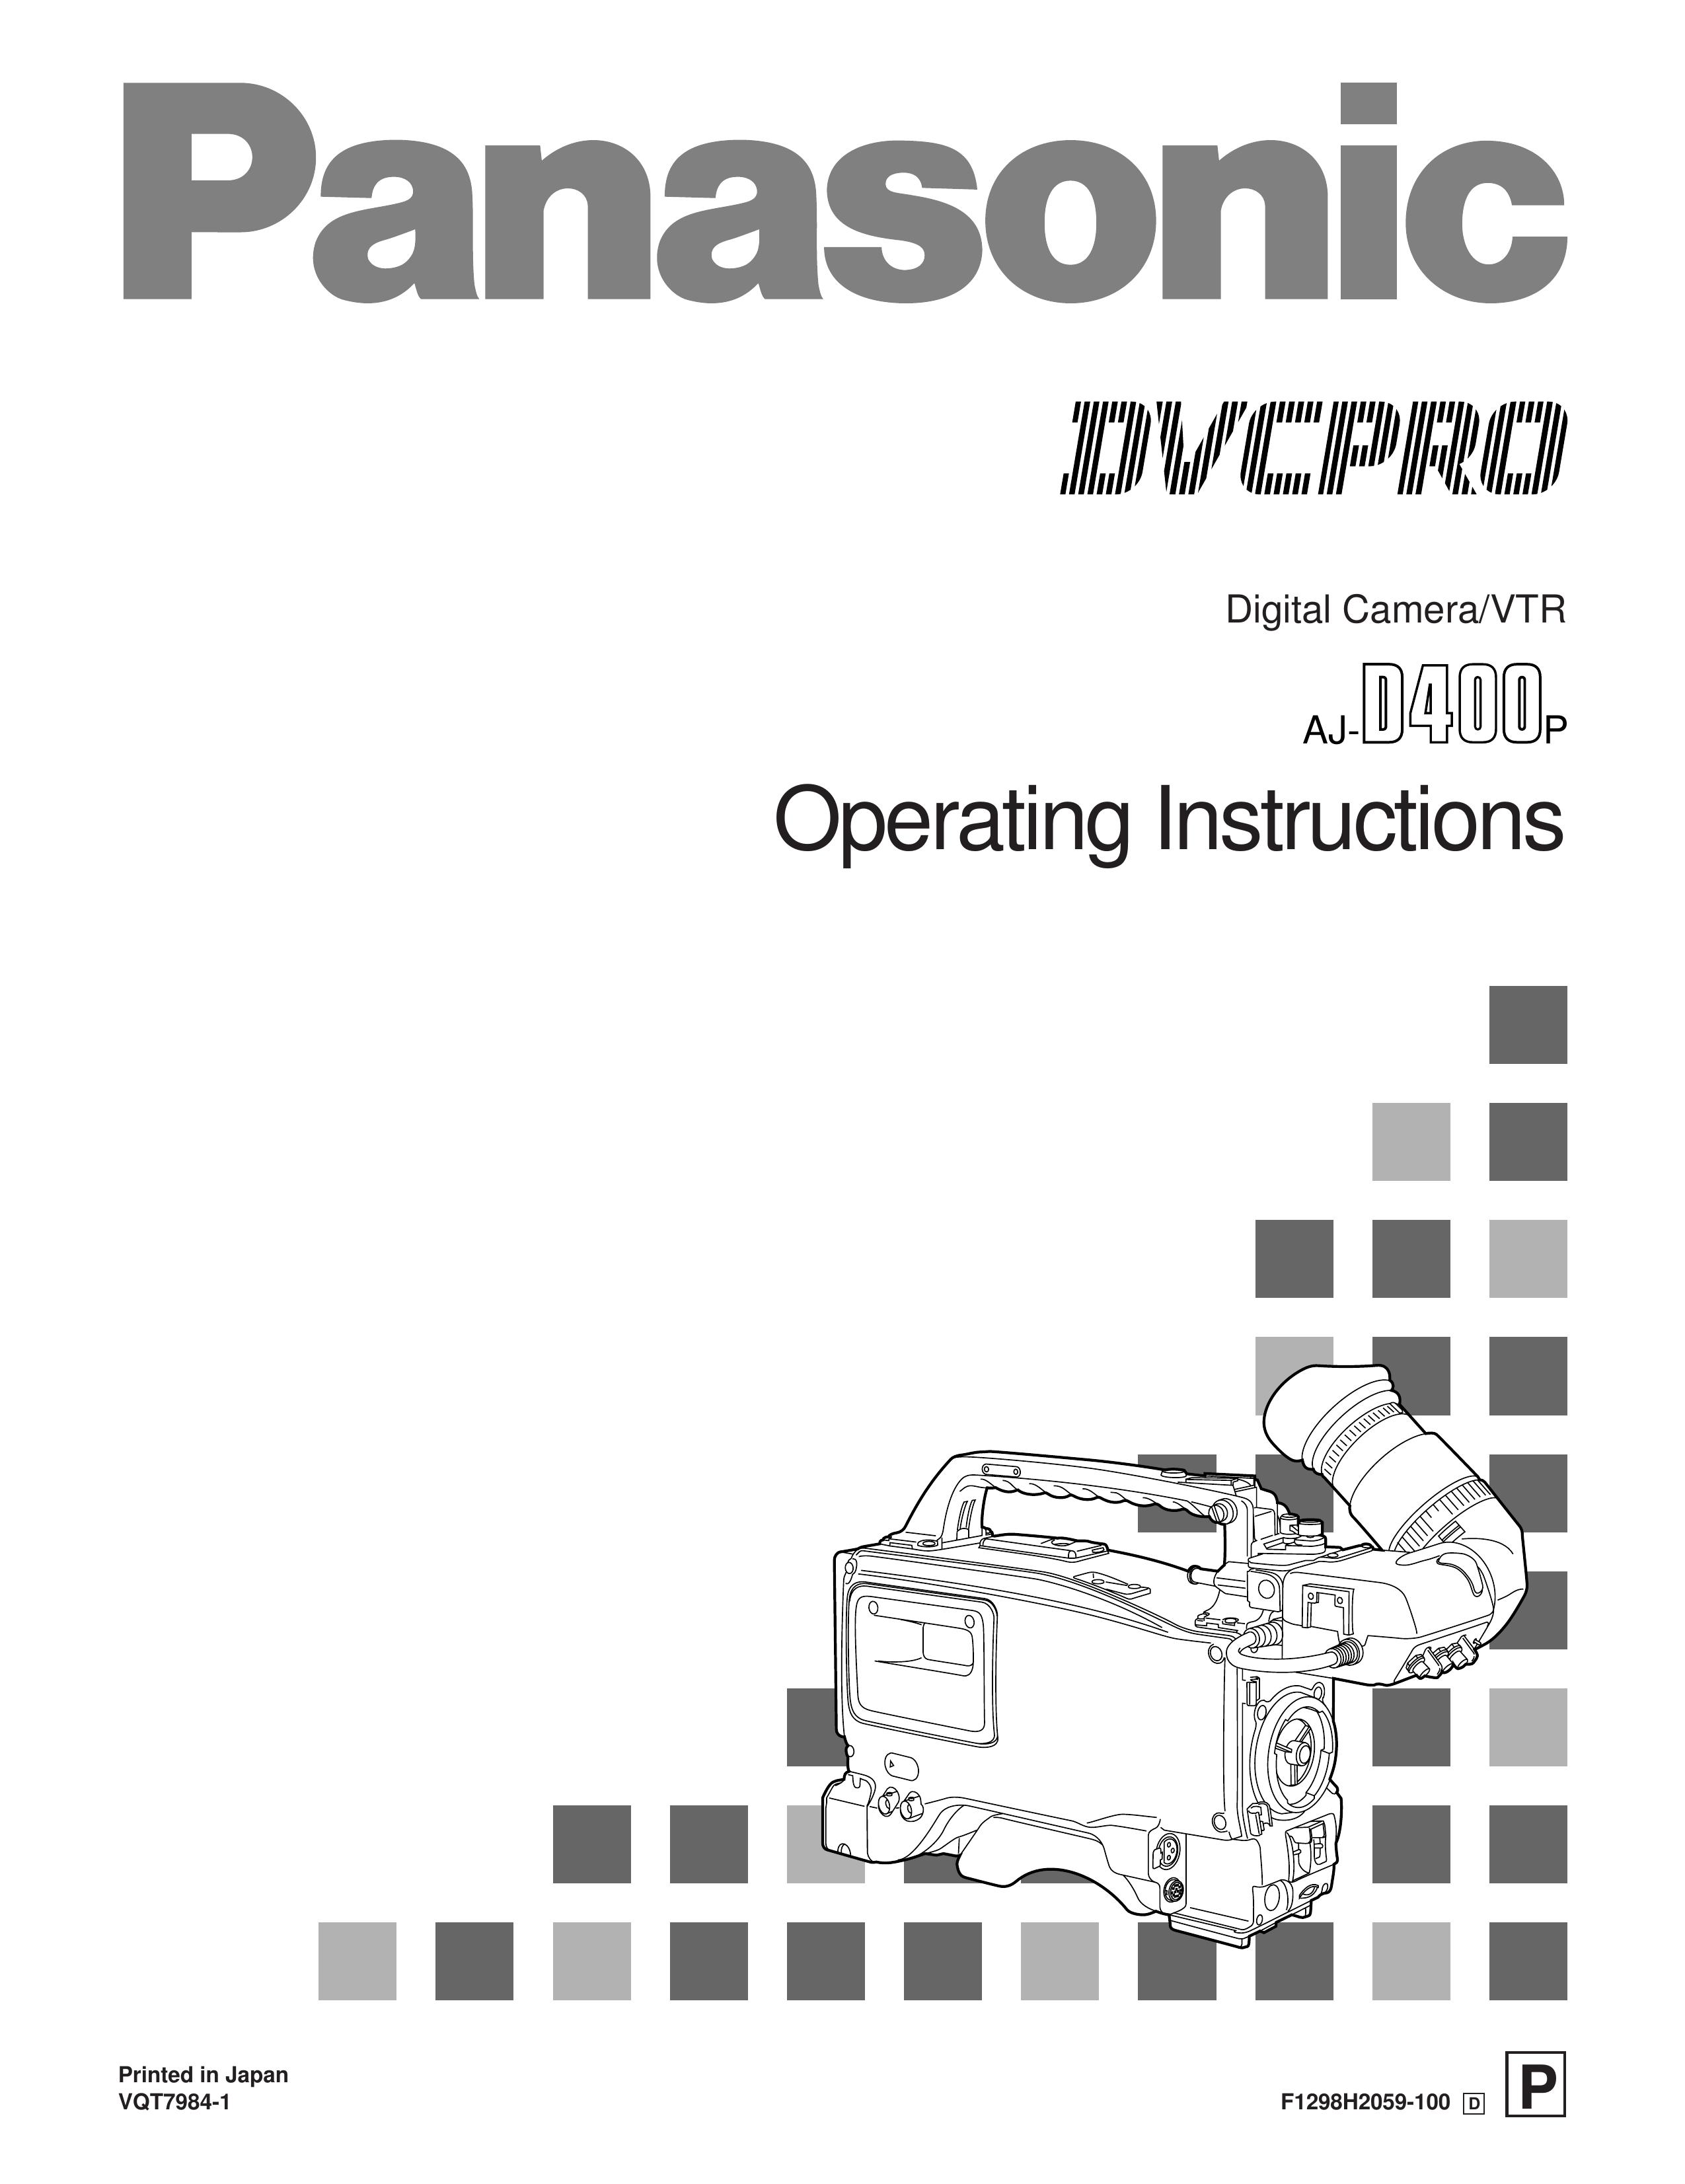 Panasonic AJ-D400 Digital Camera User Manual